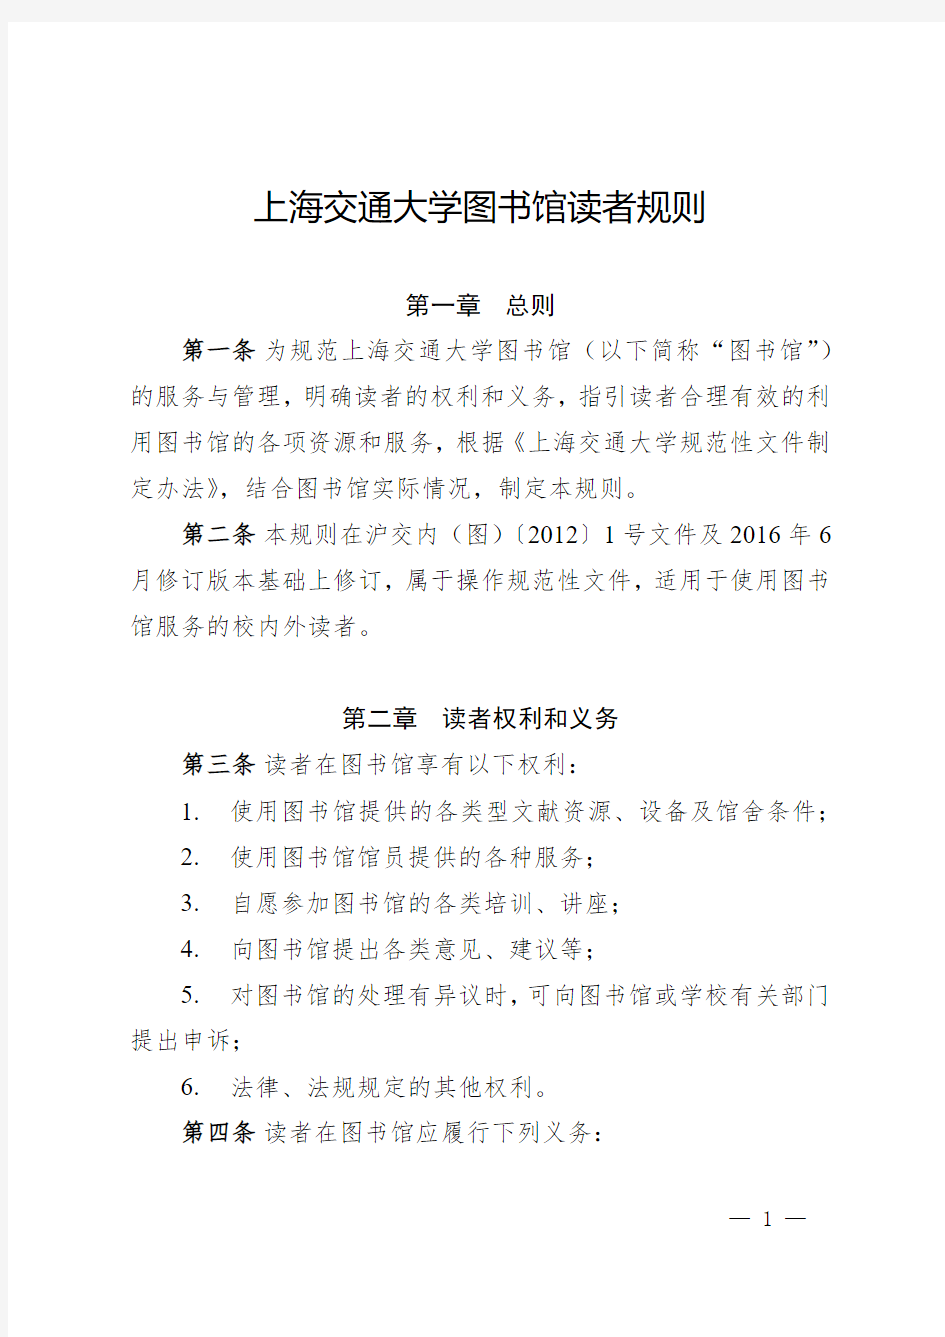 上海交通大学图书馆读者规则